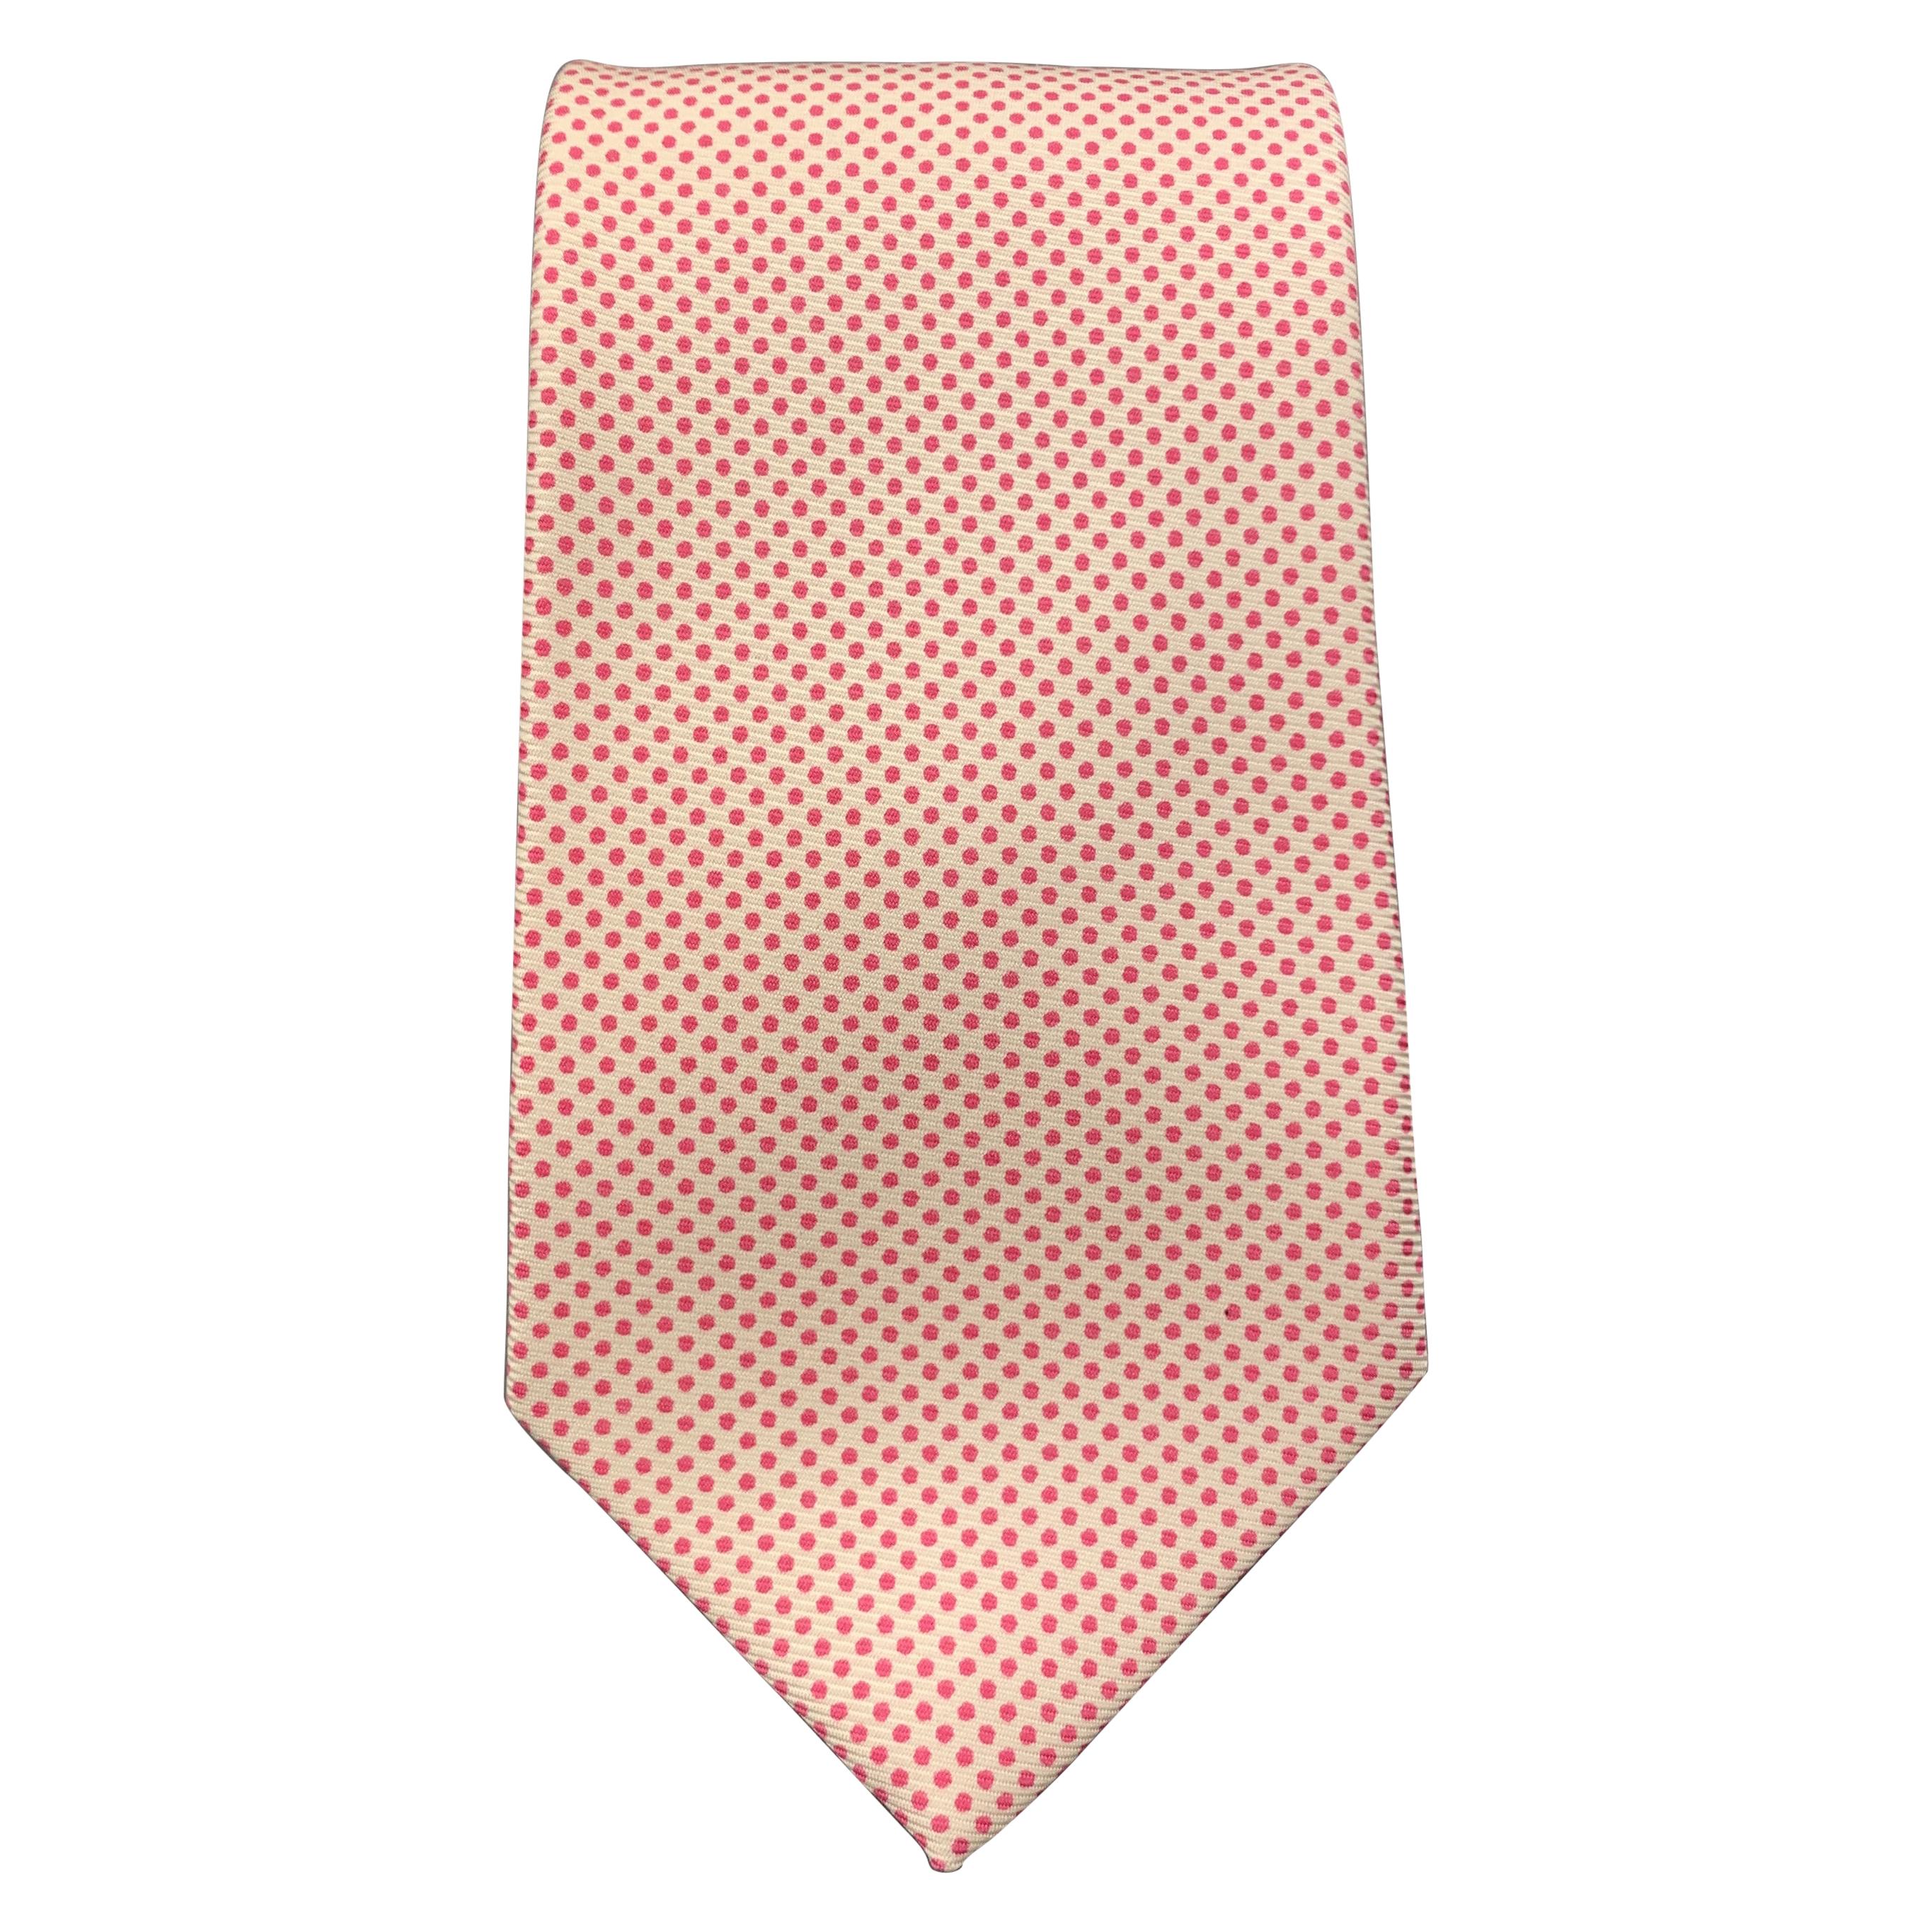 HAYWARD LONDON Pink & Cream Dotted Silk Tie